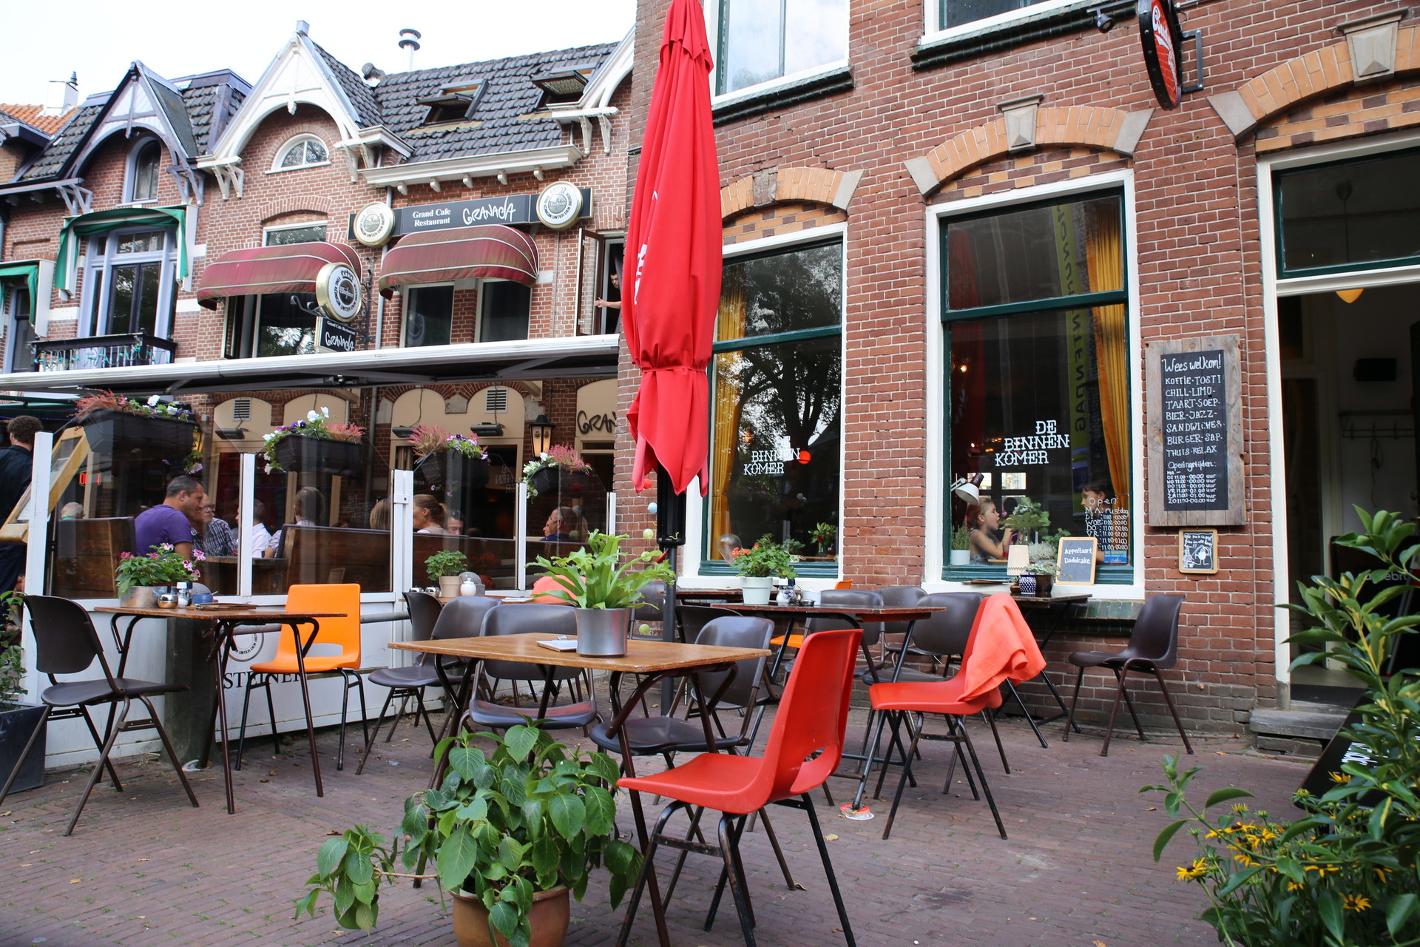 Foto De Binnenkomer in Alkmaar, Eten & drinken, Lunch, Borrel, Diner - #1